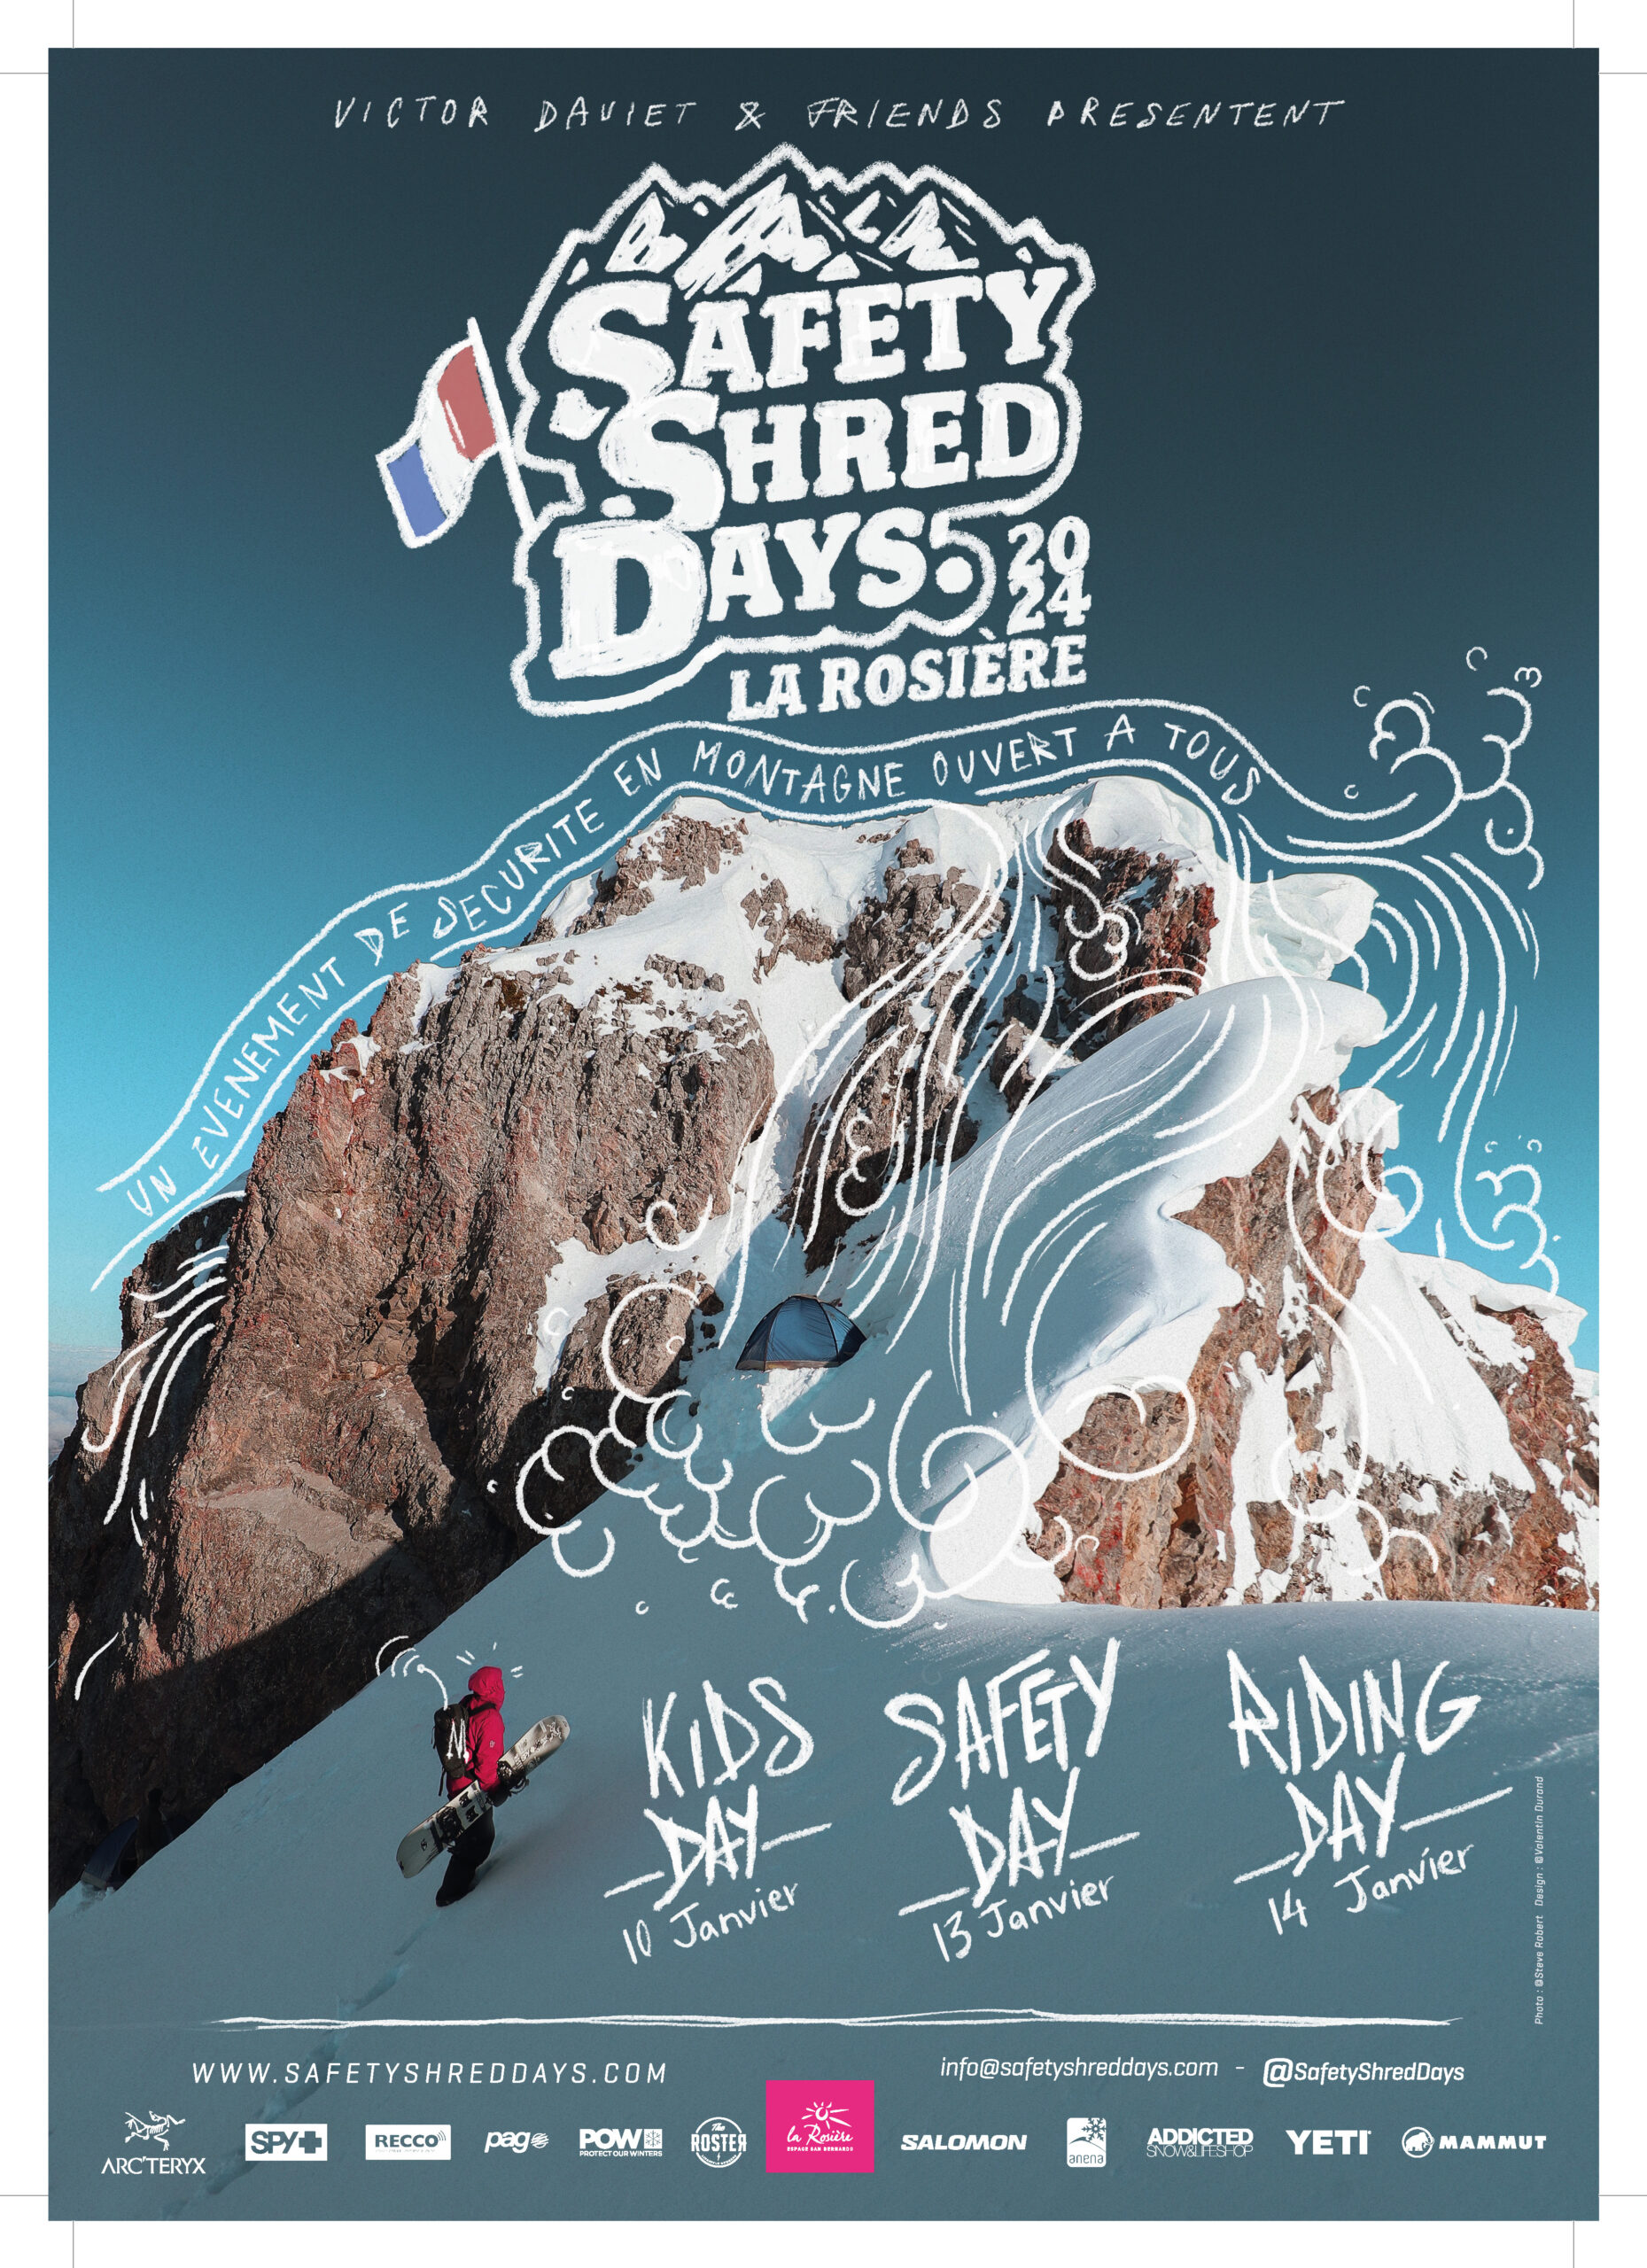 Safety Shred Days by Victor DAVIET - La Rosière - Station de ski